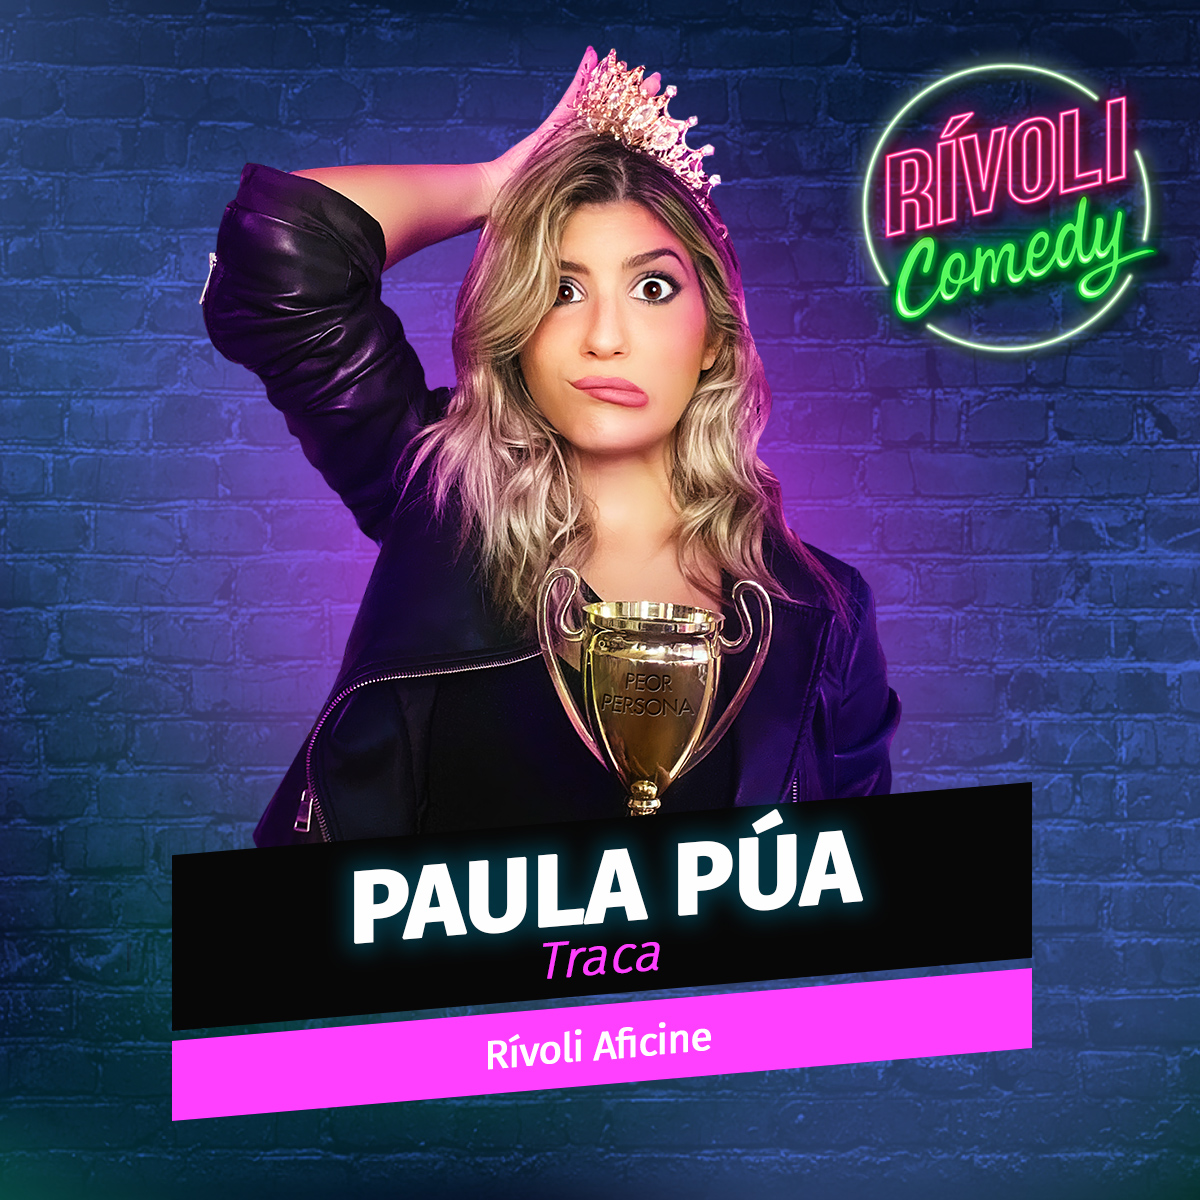 Paula Púa | Traca · 31 de marzo · Palma de Mallorca (Rívoli Comedy)